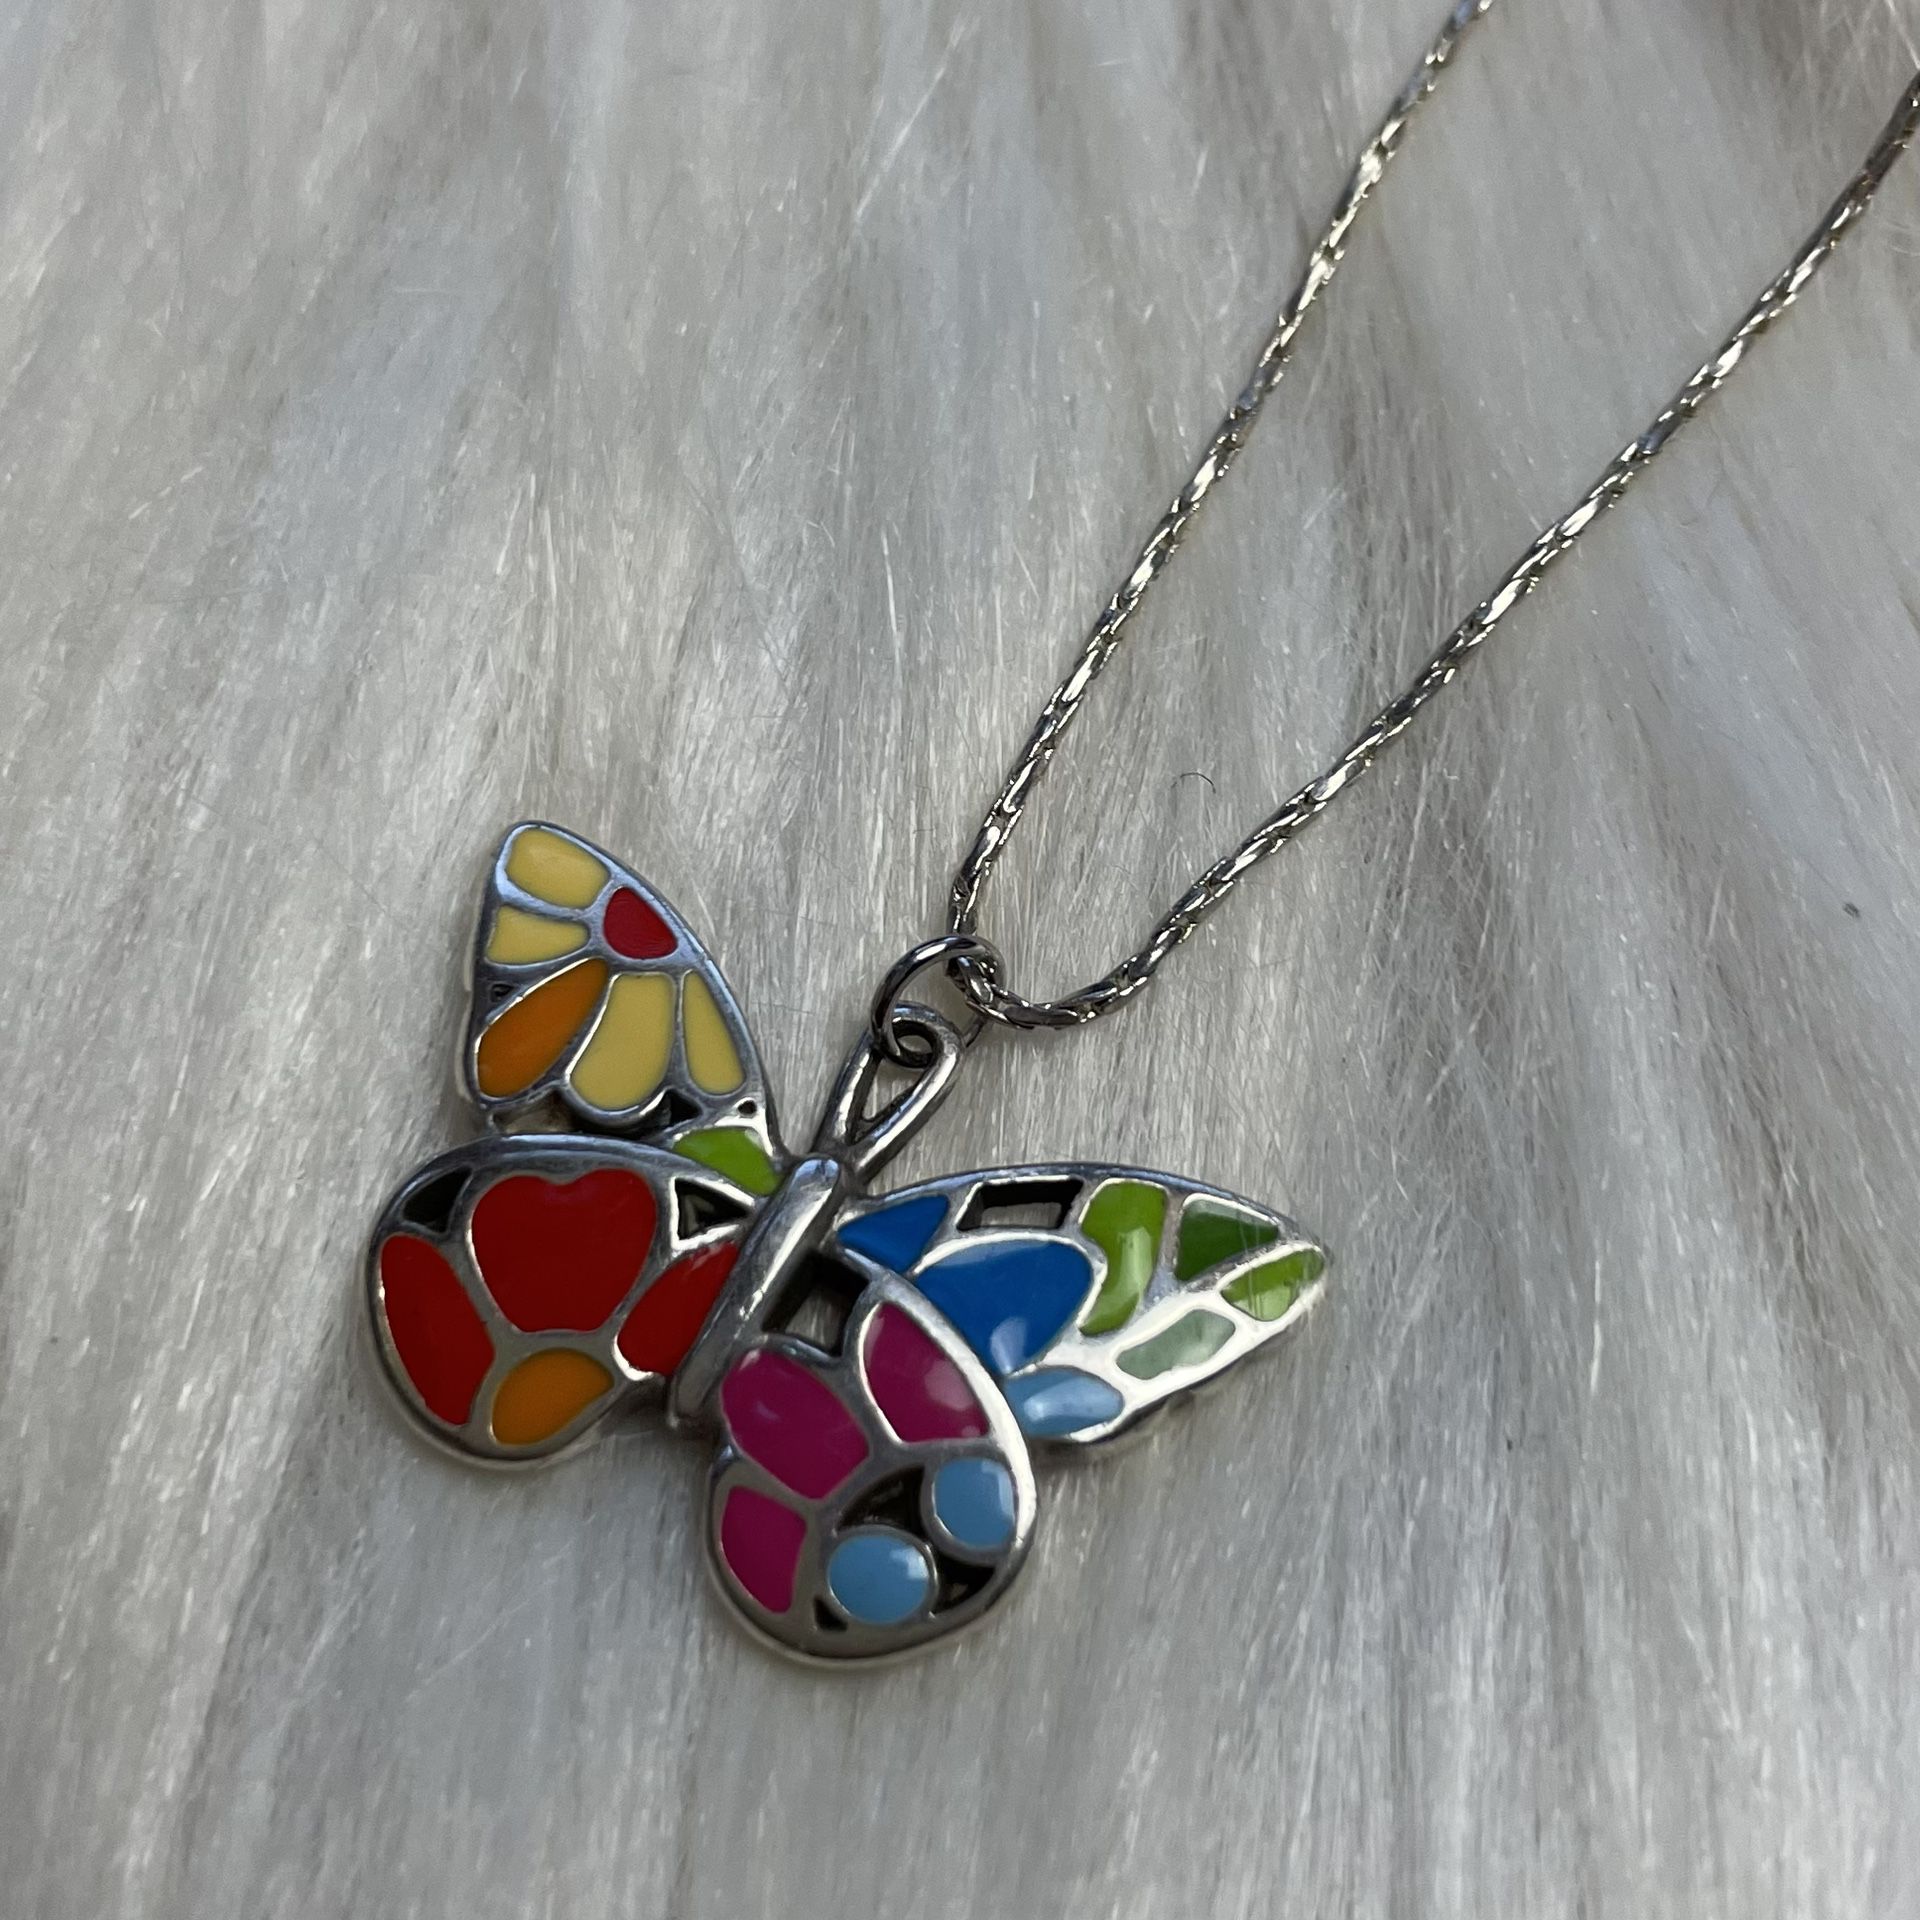 Butterfly enamel silver tone necklace